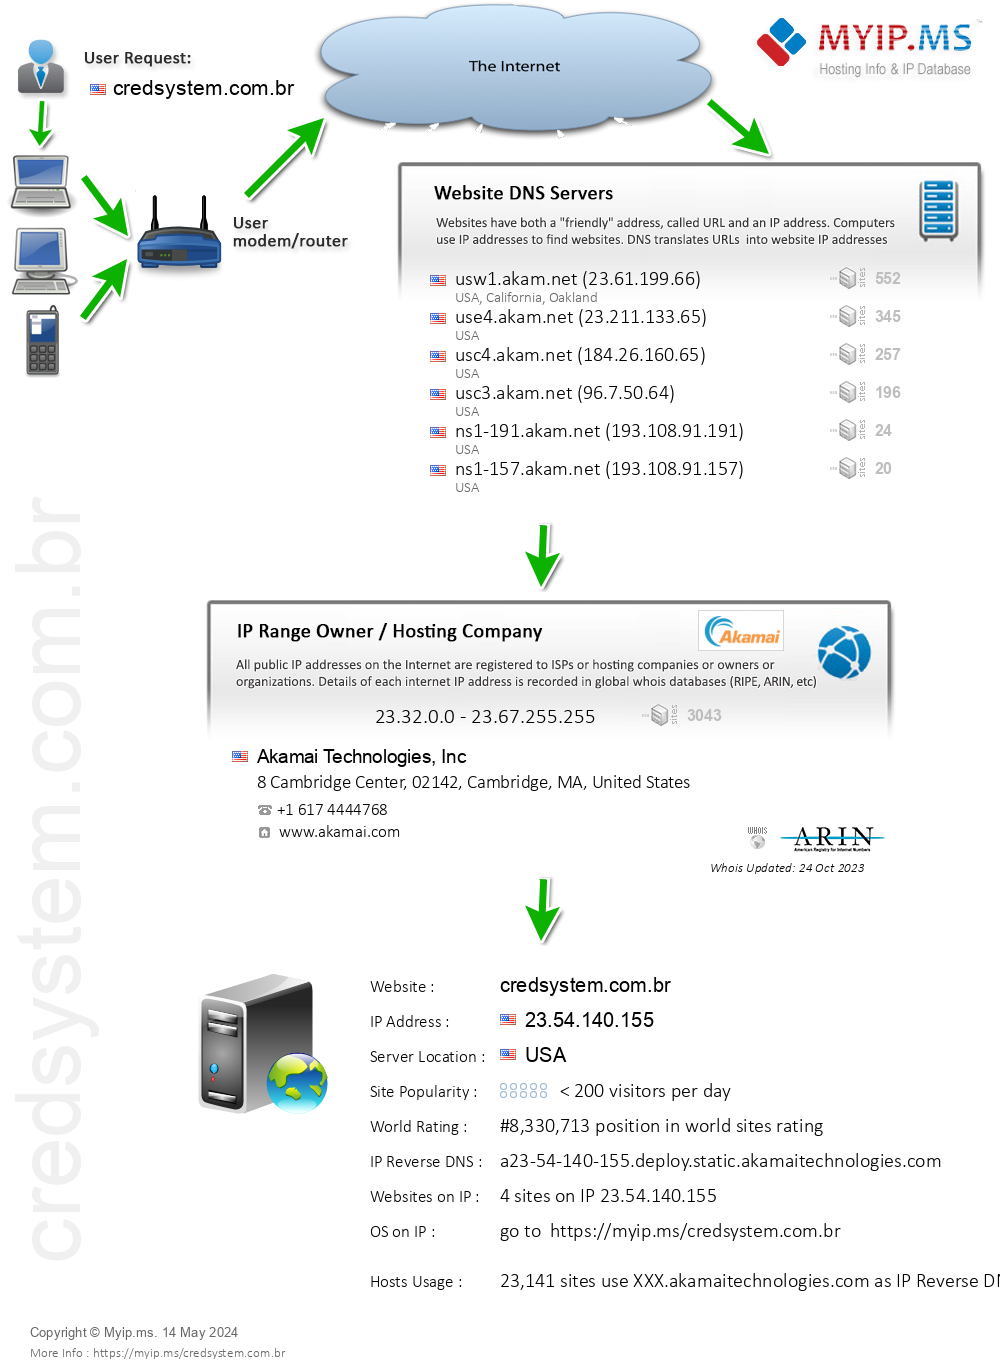 Credsystem.com.br - Website Hosting Visual IP Diagram